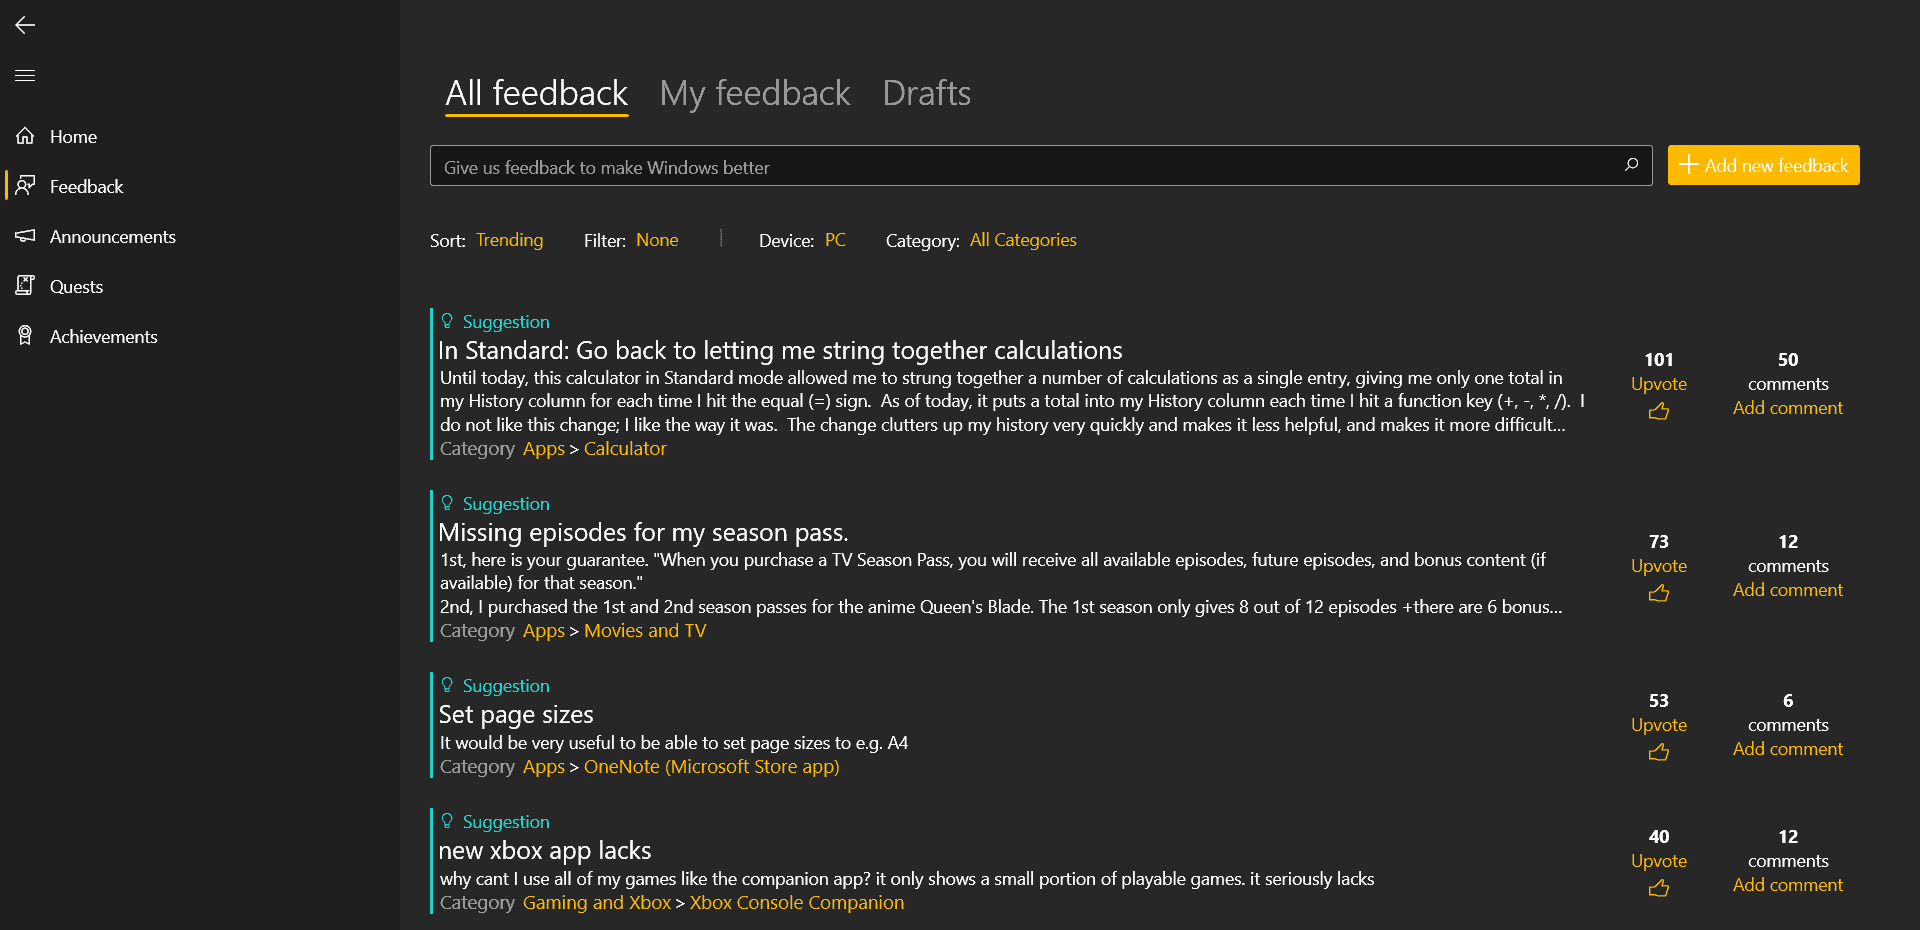 feedback hub